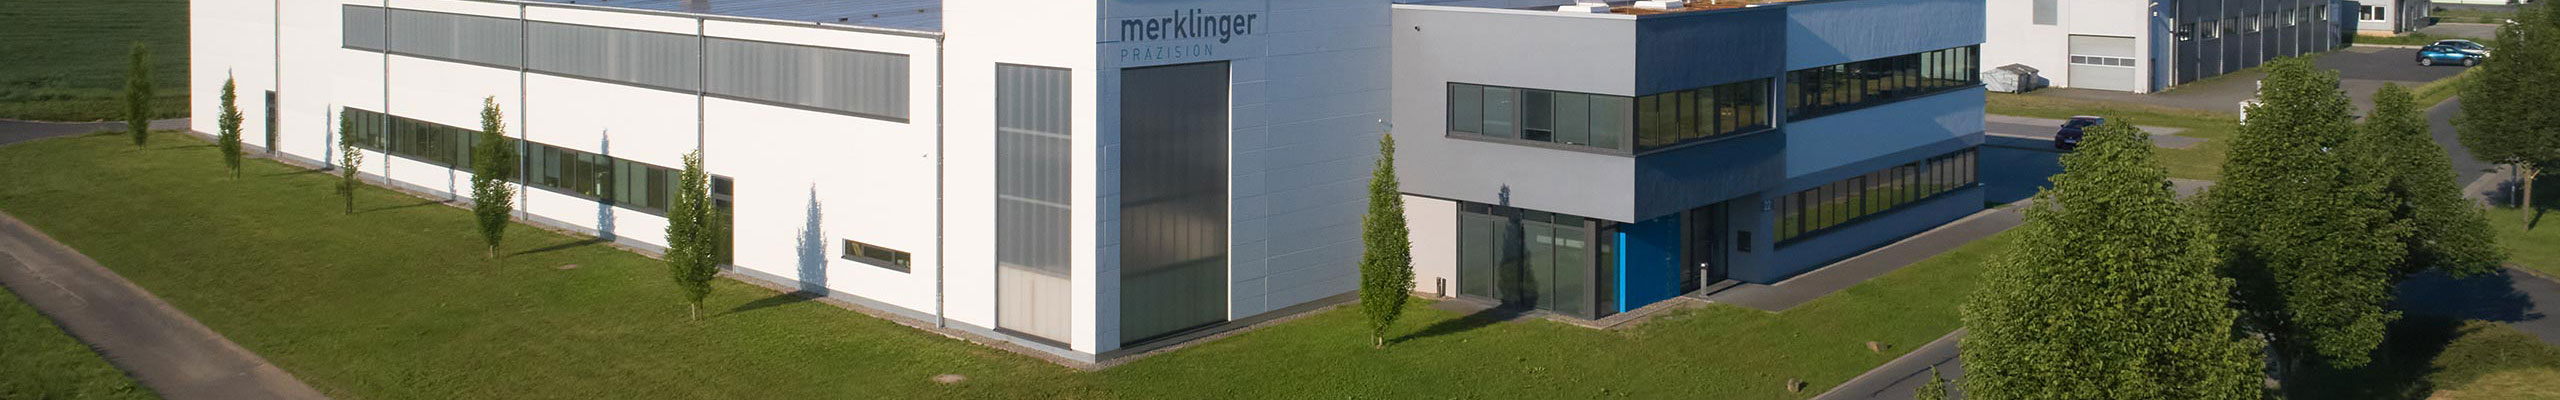 Kontaktformular - Manfred Merklinger GmbH